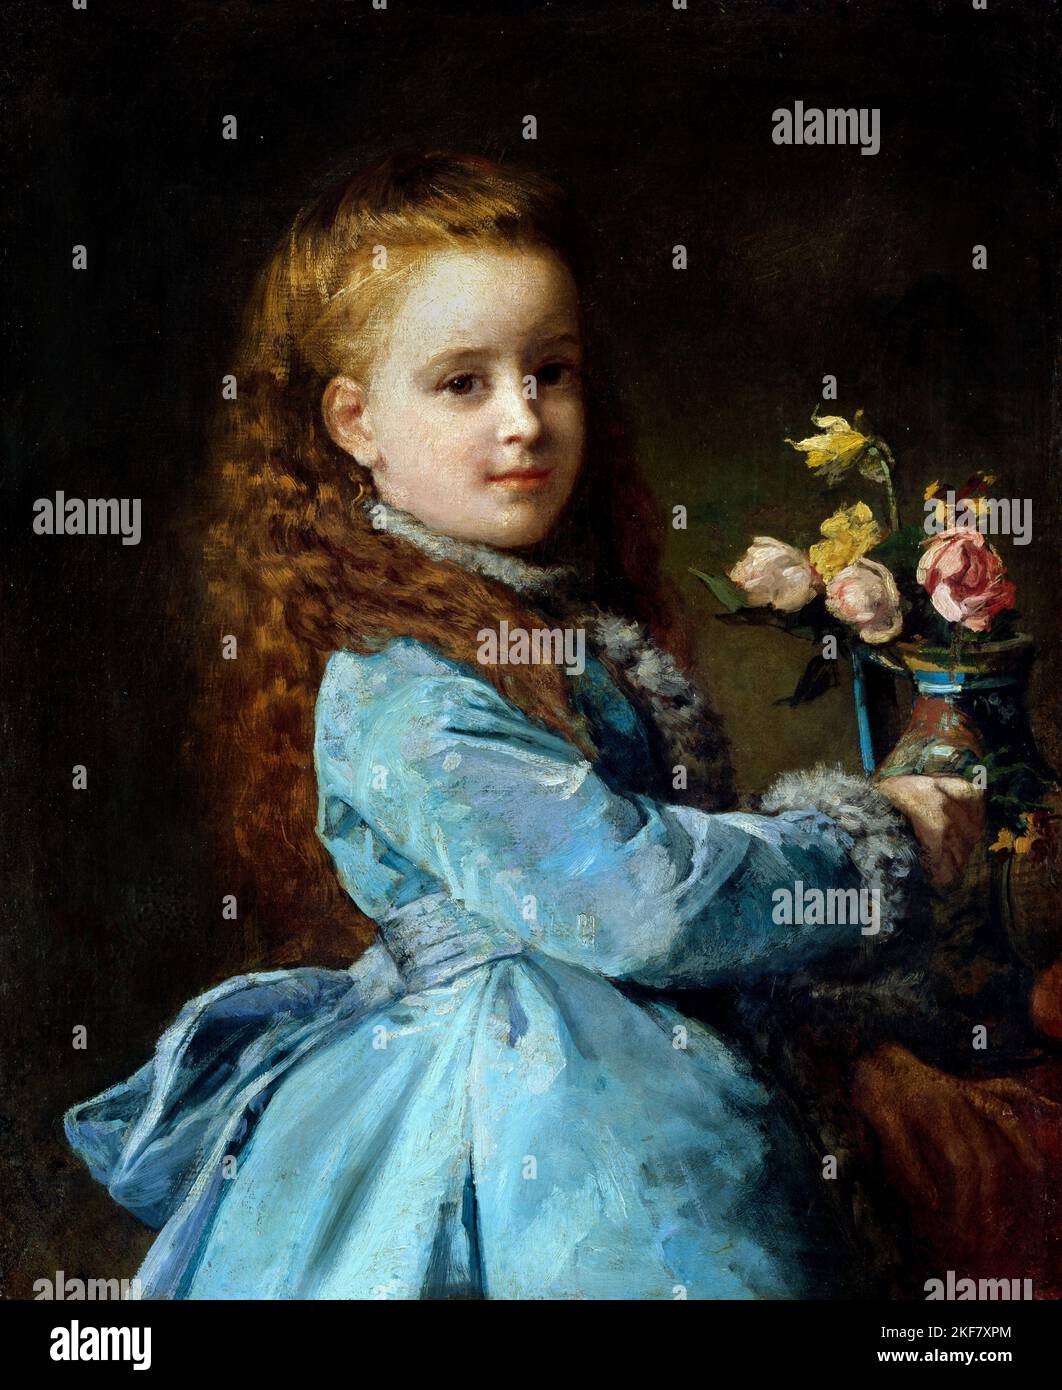 Edward Harrison May; Edith Wharton; 1870; huile sur toile; National Portrait Gallery, Washington, États-Unis. Banque D'Images